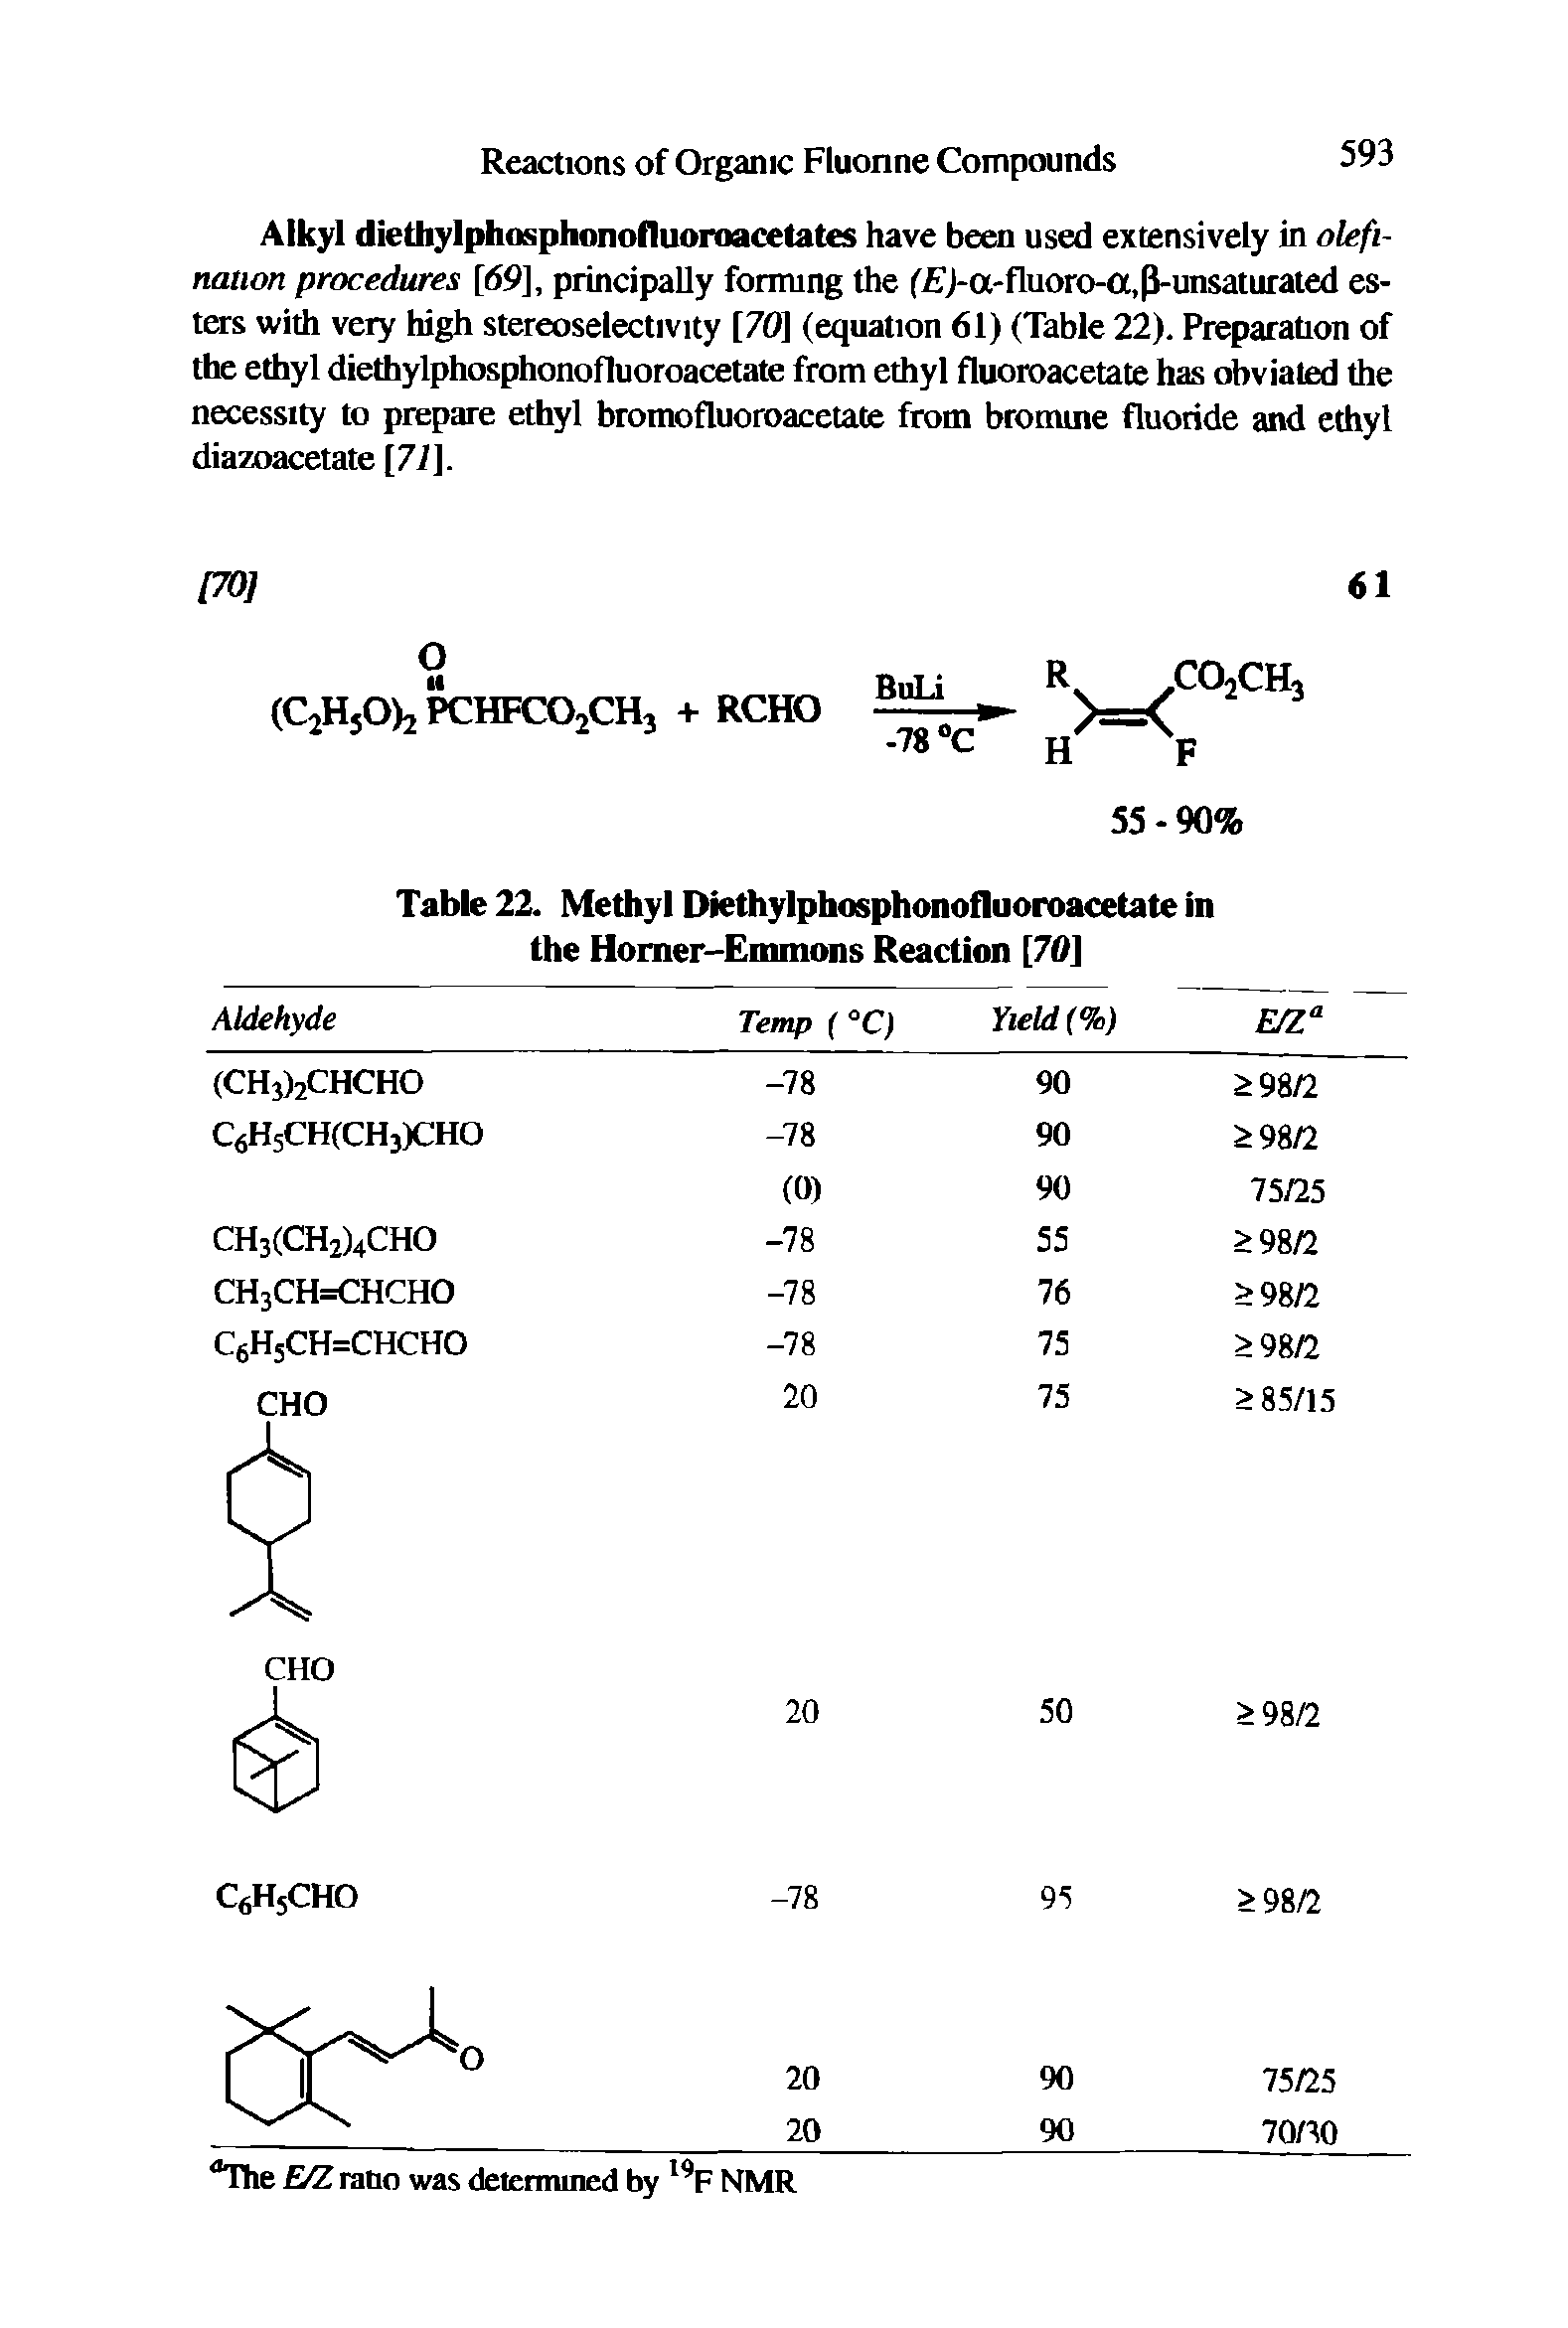 Table 22. Methyl Diethylphosphonofluoroacetate in the Homer-Emmons Reaction [70]...